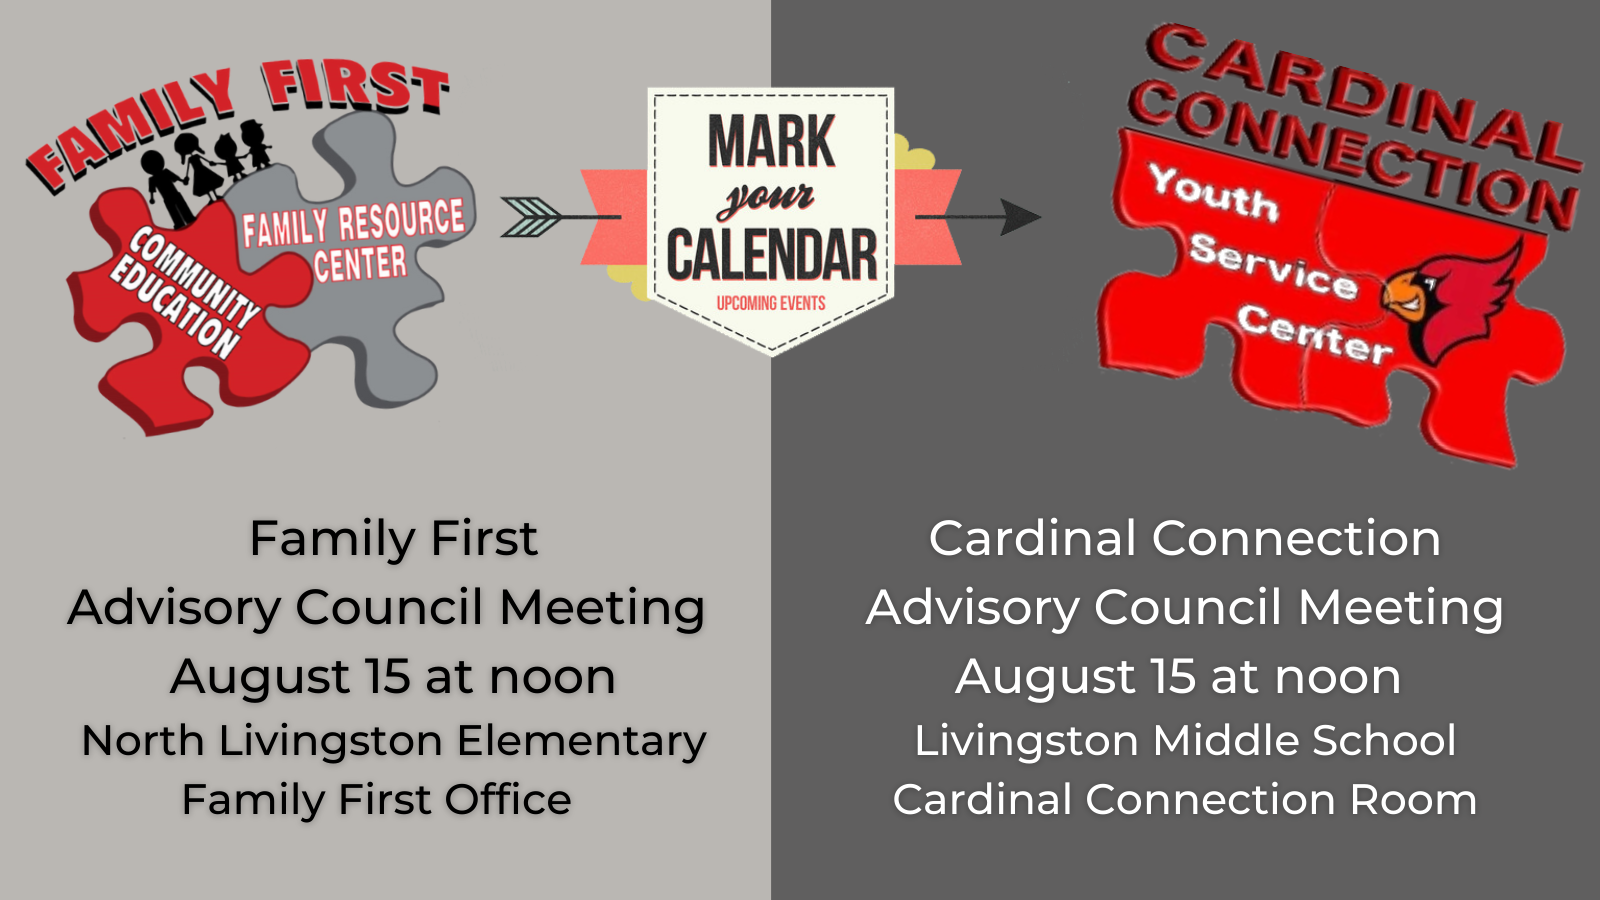 Mark Your Calendar Advisory Council Meeting August 15